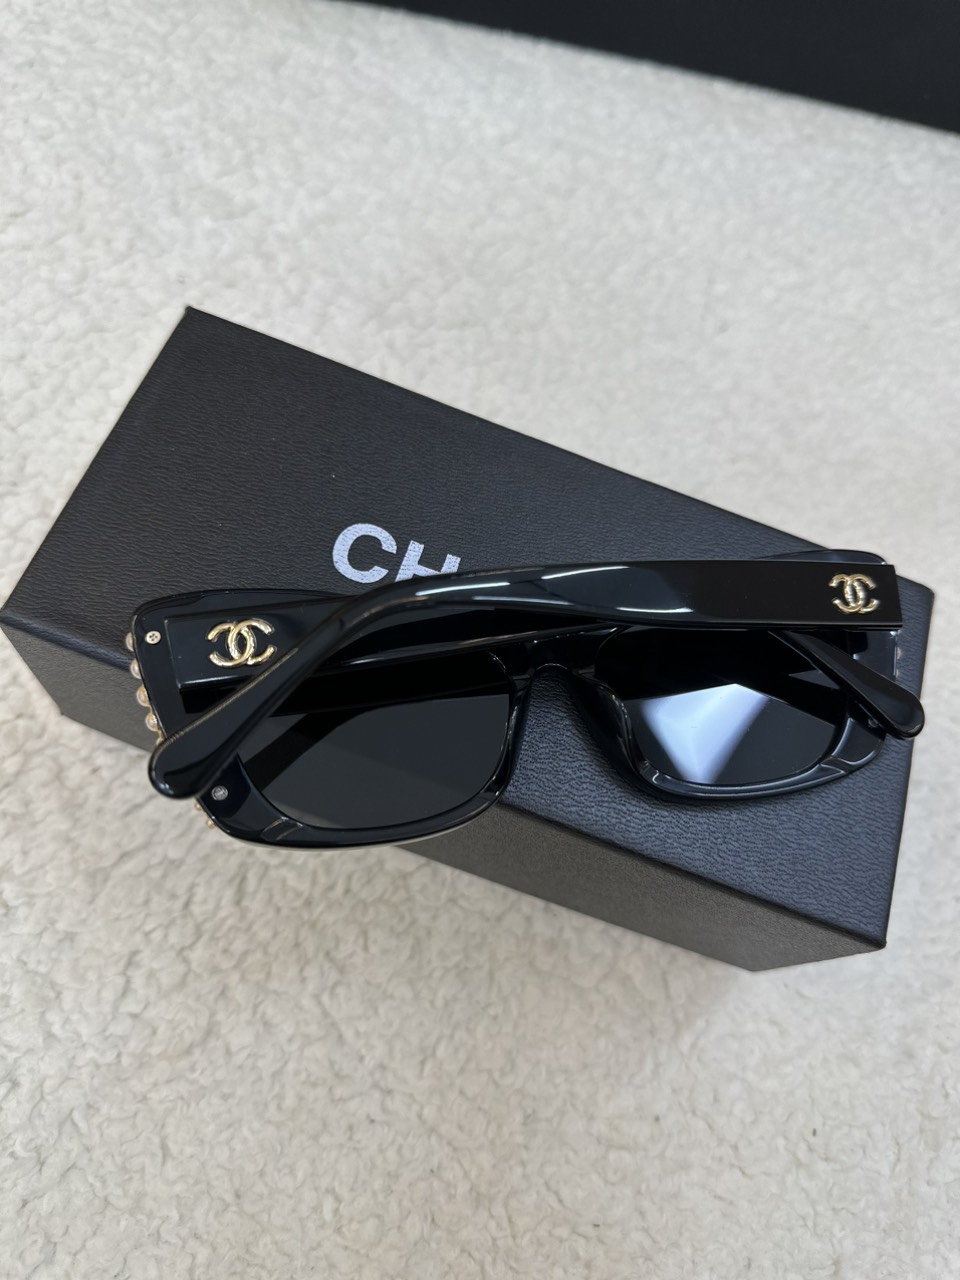 Kính Chanel Mắt Mèo Đính Ngọc Trai Màu Đen Size: 54 - 16 - 145 mm